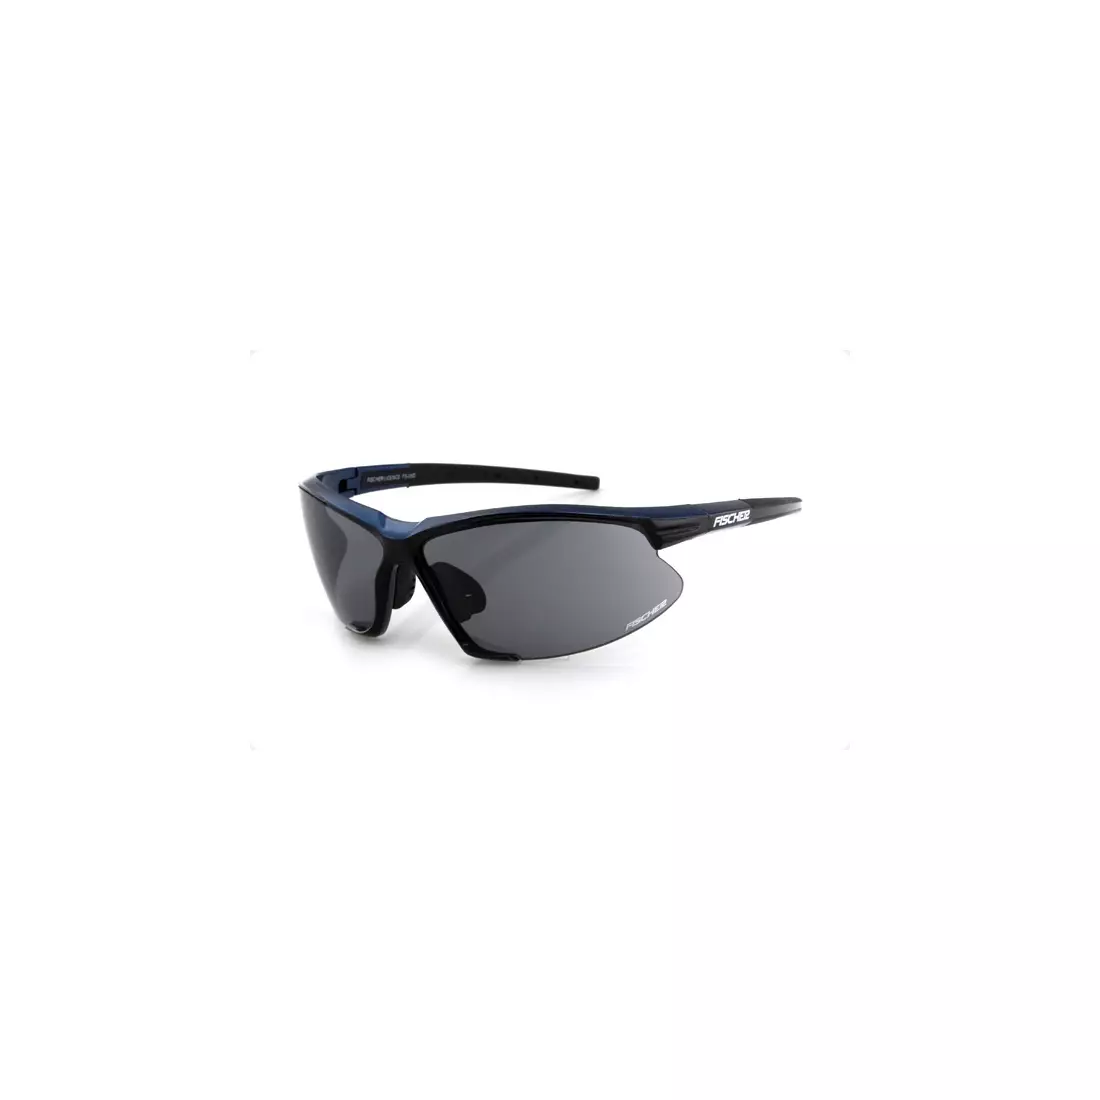 FISCHER - sportszemüveg FS-05D - szín: Fekete és kék